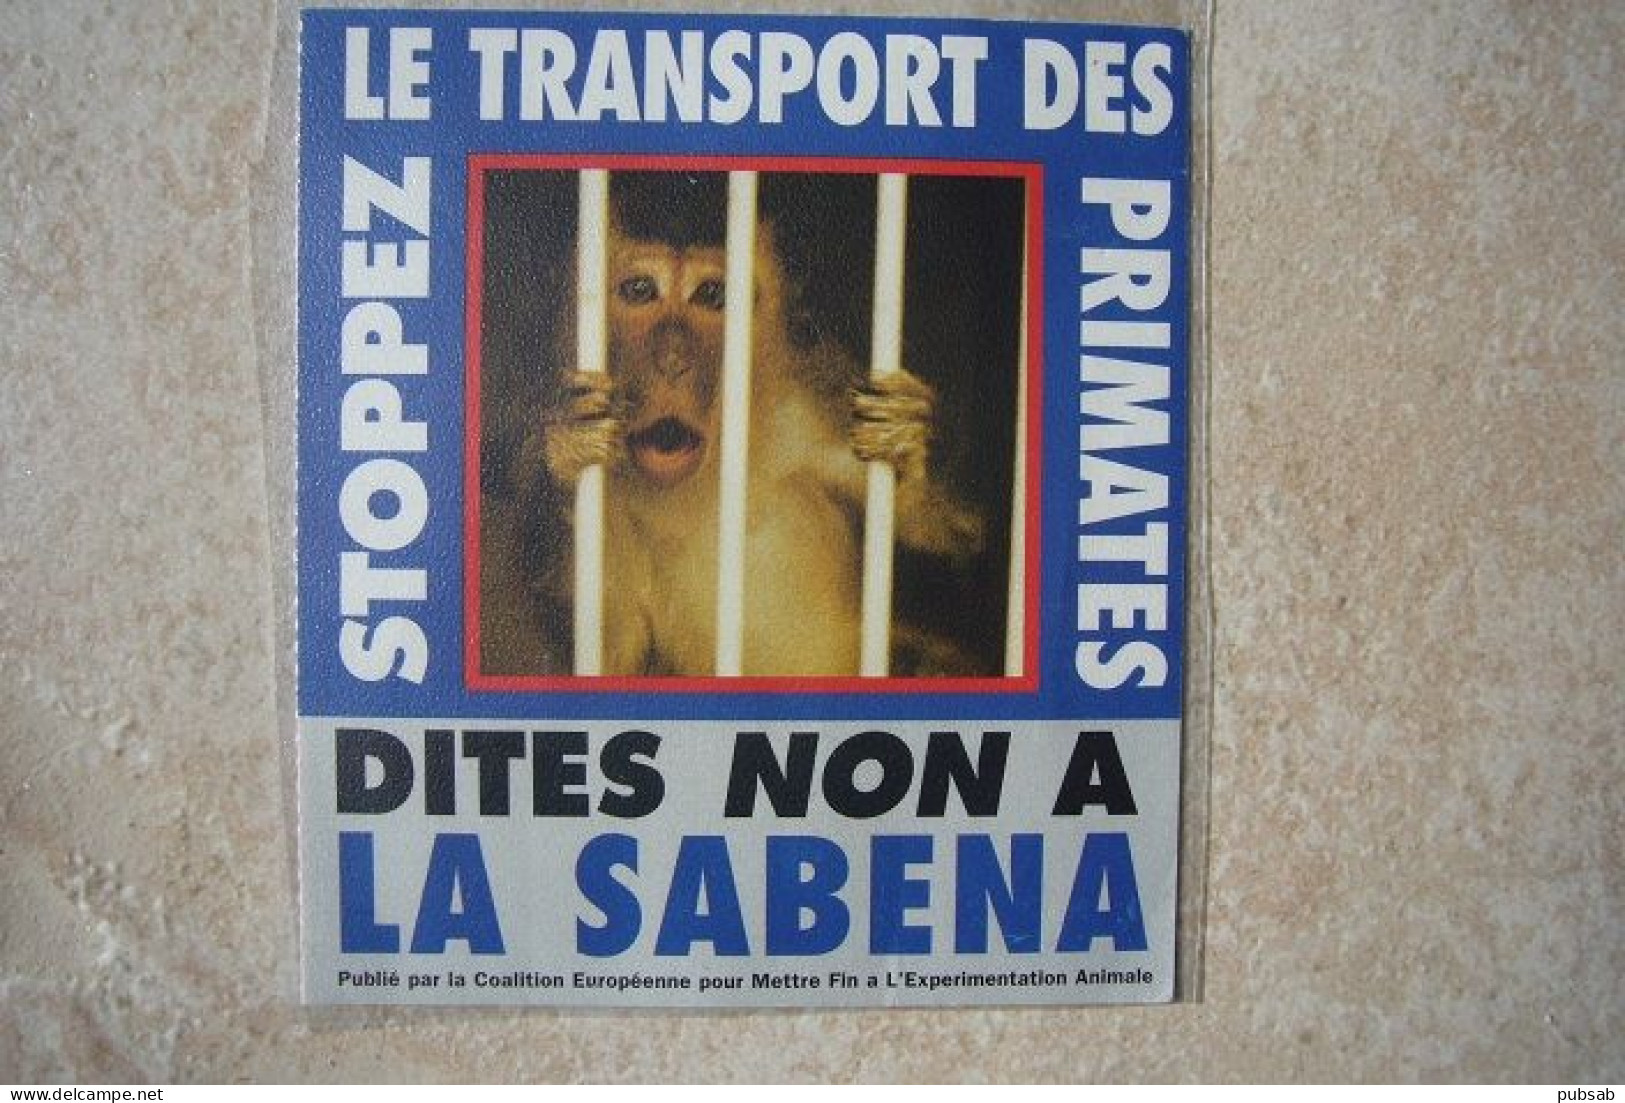 Avion / Airplane / Sabena / Autocollant / Sticker / Stopez Le Transport Des Primates / Dites Non à La SABENA - Autocollants